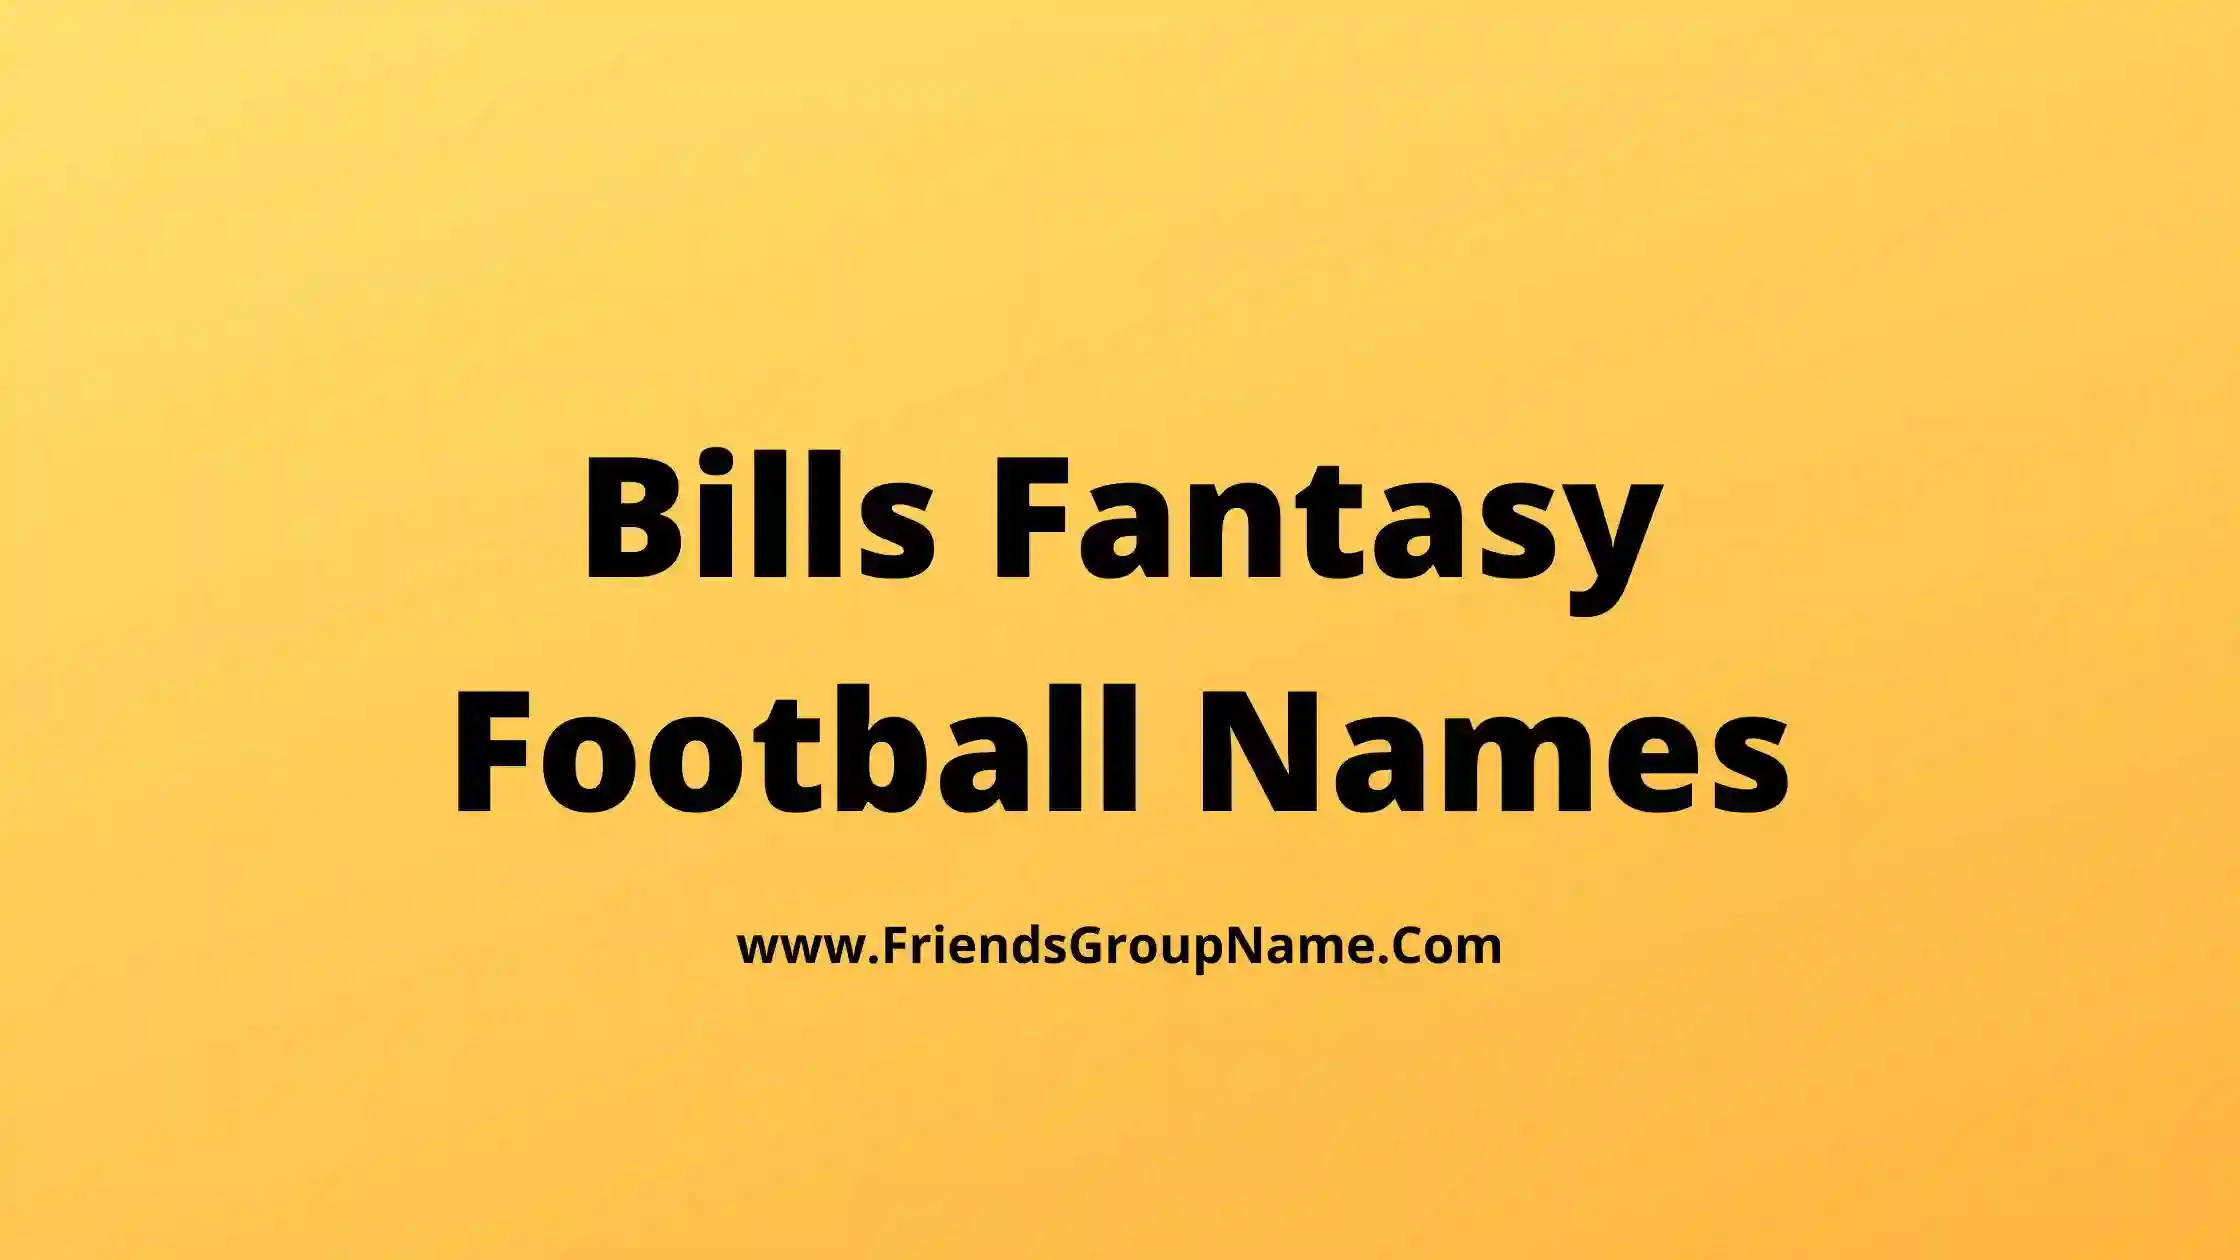 Bills Fantasy Football Names